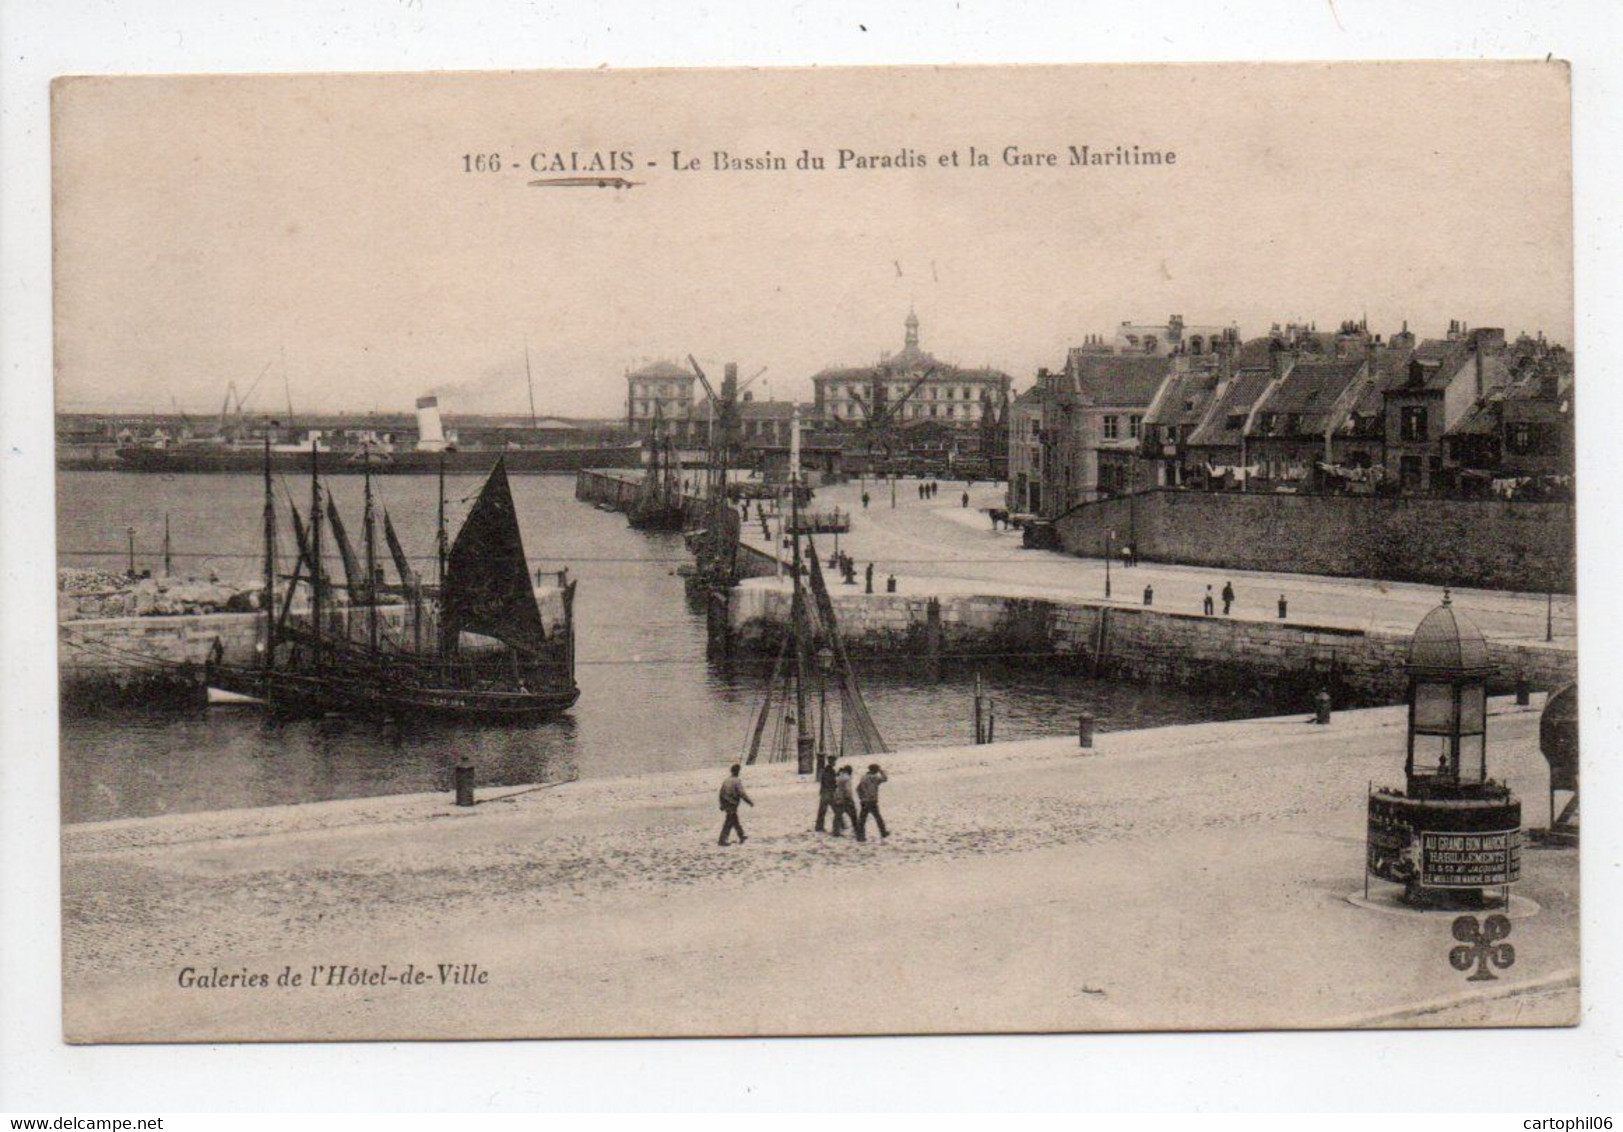 - CPA CALAIS (62) - Le Bassin Du Paradis Et La Gare Maritime - Edition Tesson (MTIL) 166 - - Calais